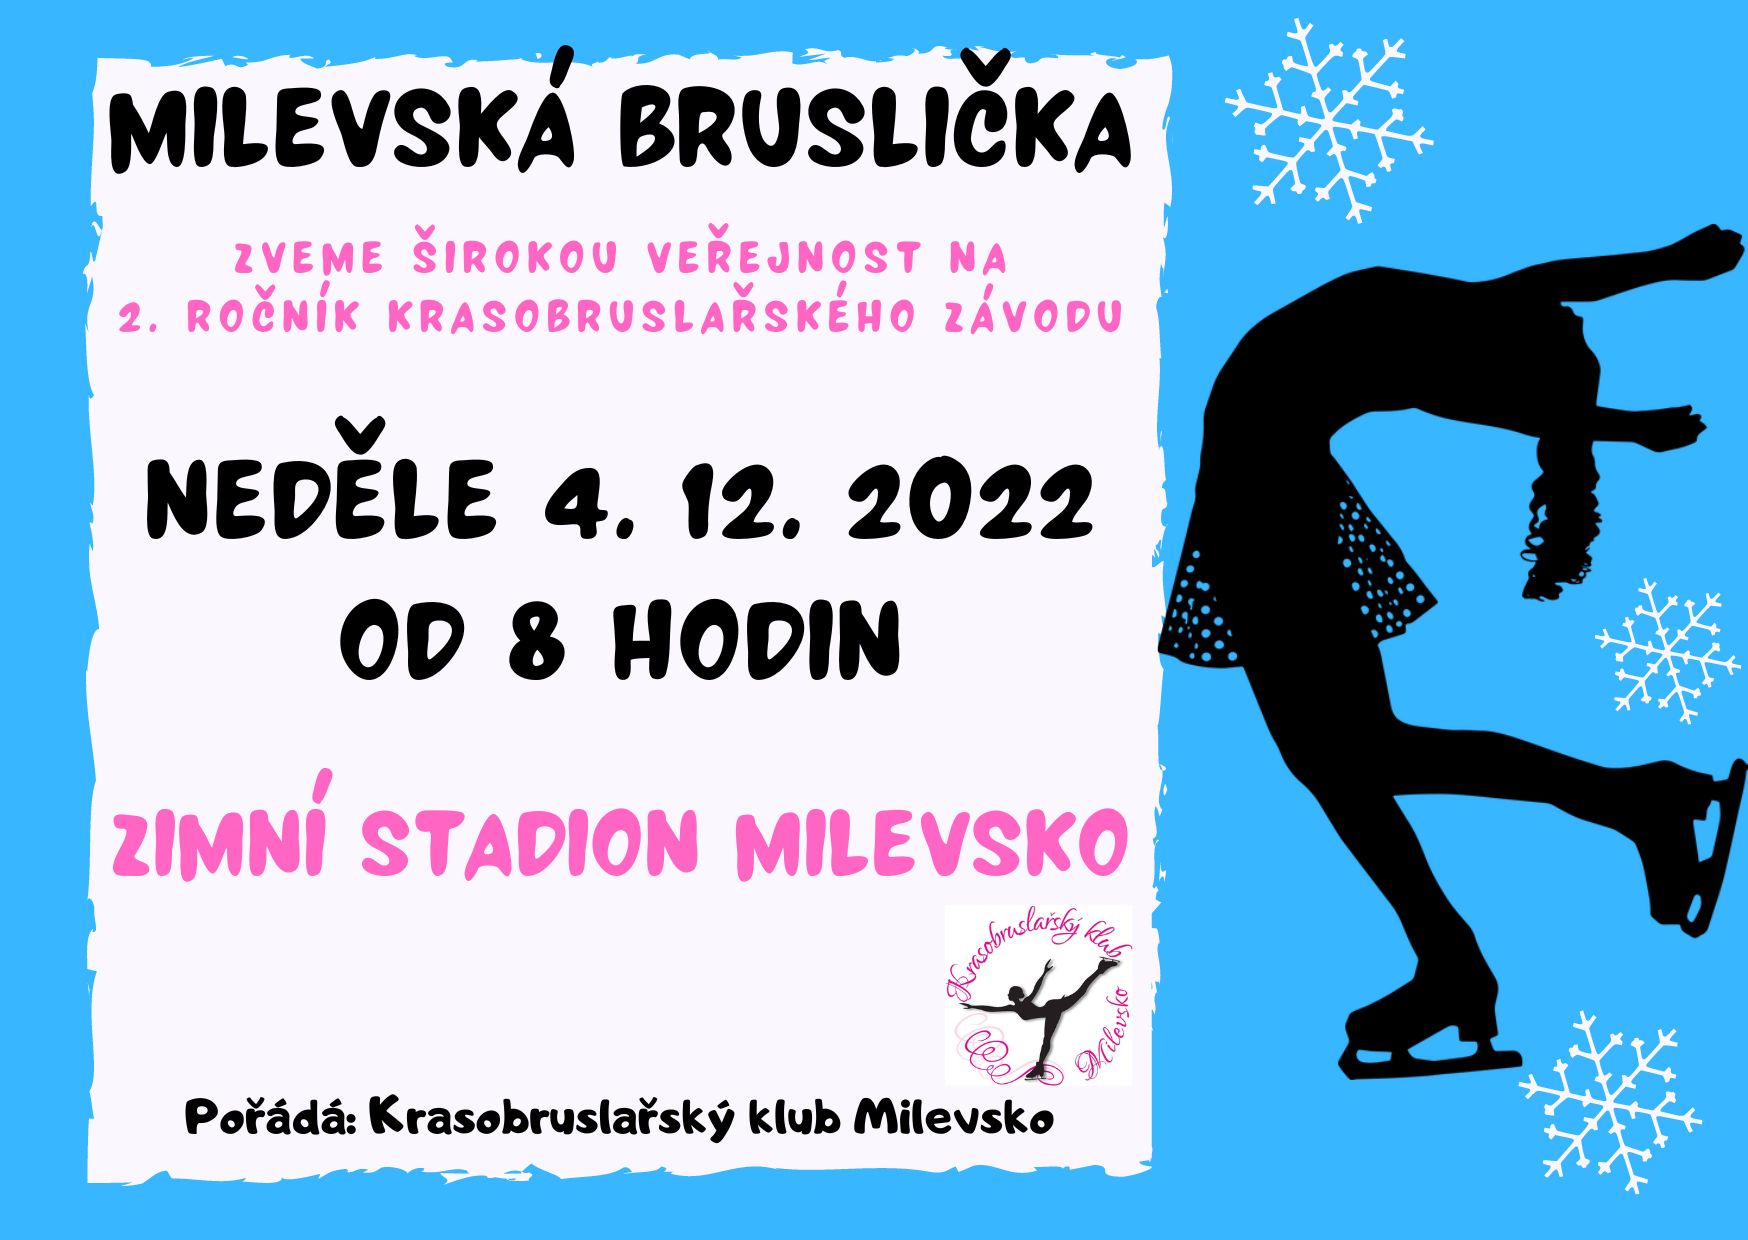 Plakát Milevská bruslička